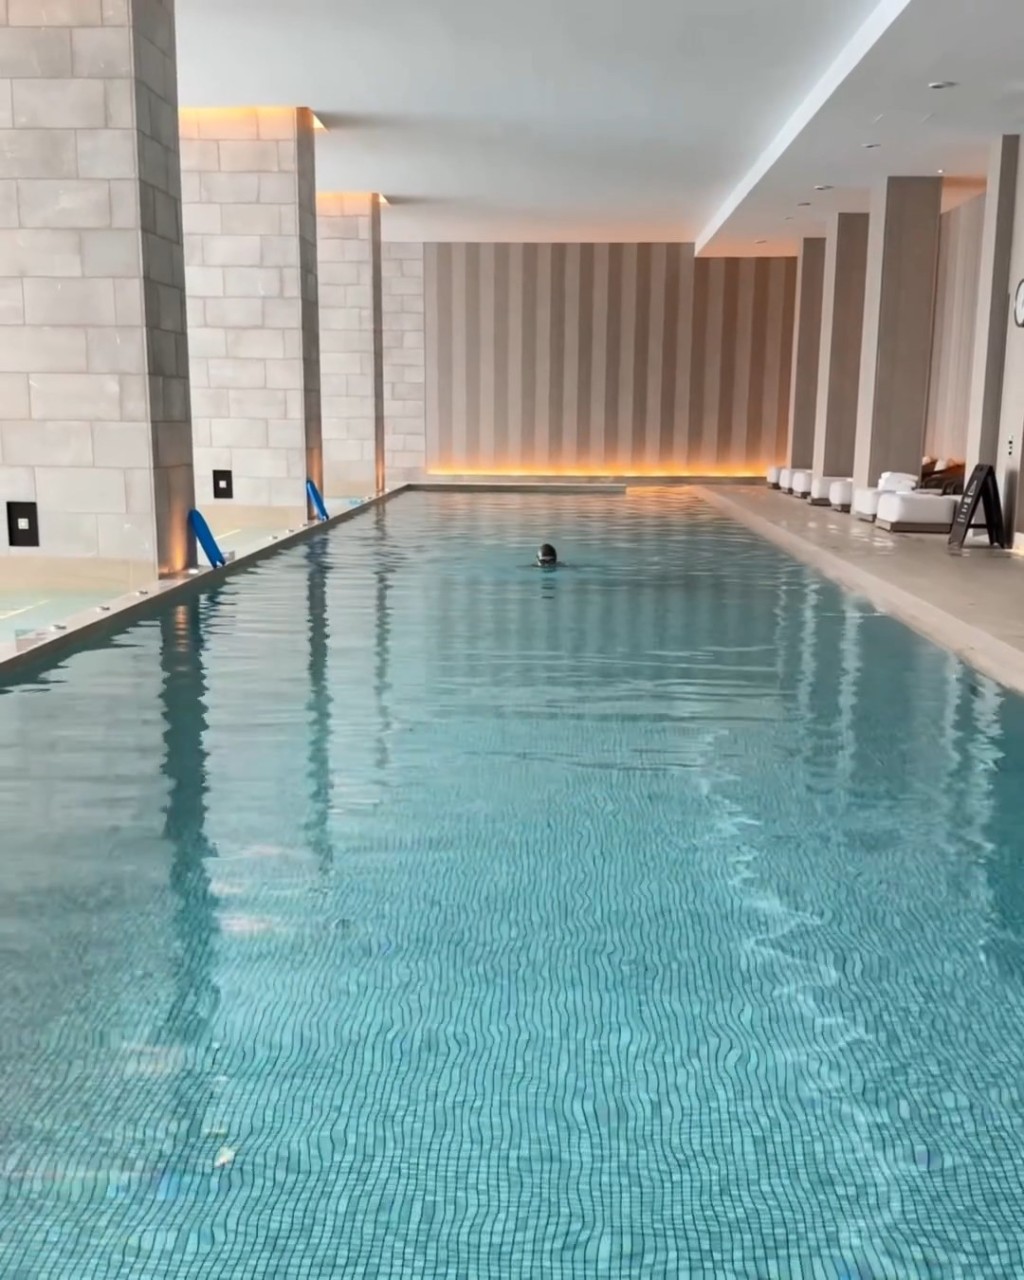 黎姿於IG分享緩慢游泳的影片，估計是以游泳當復健。